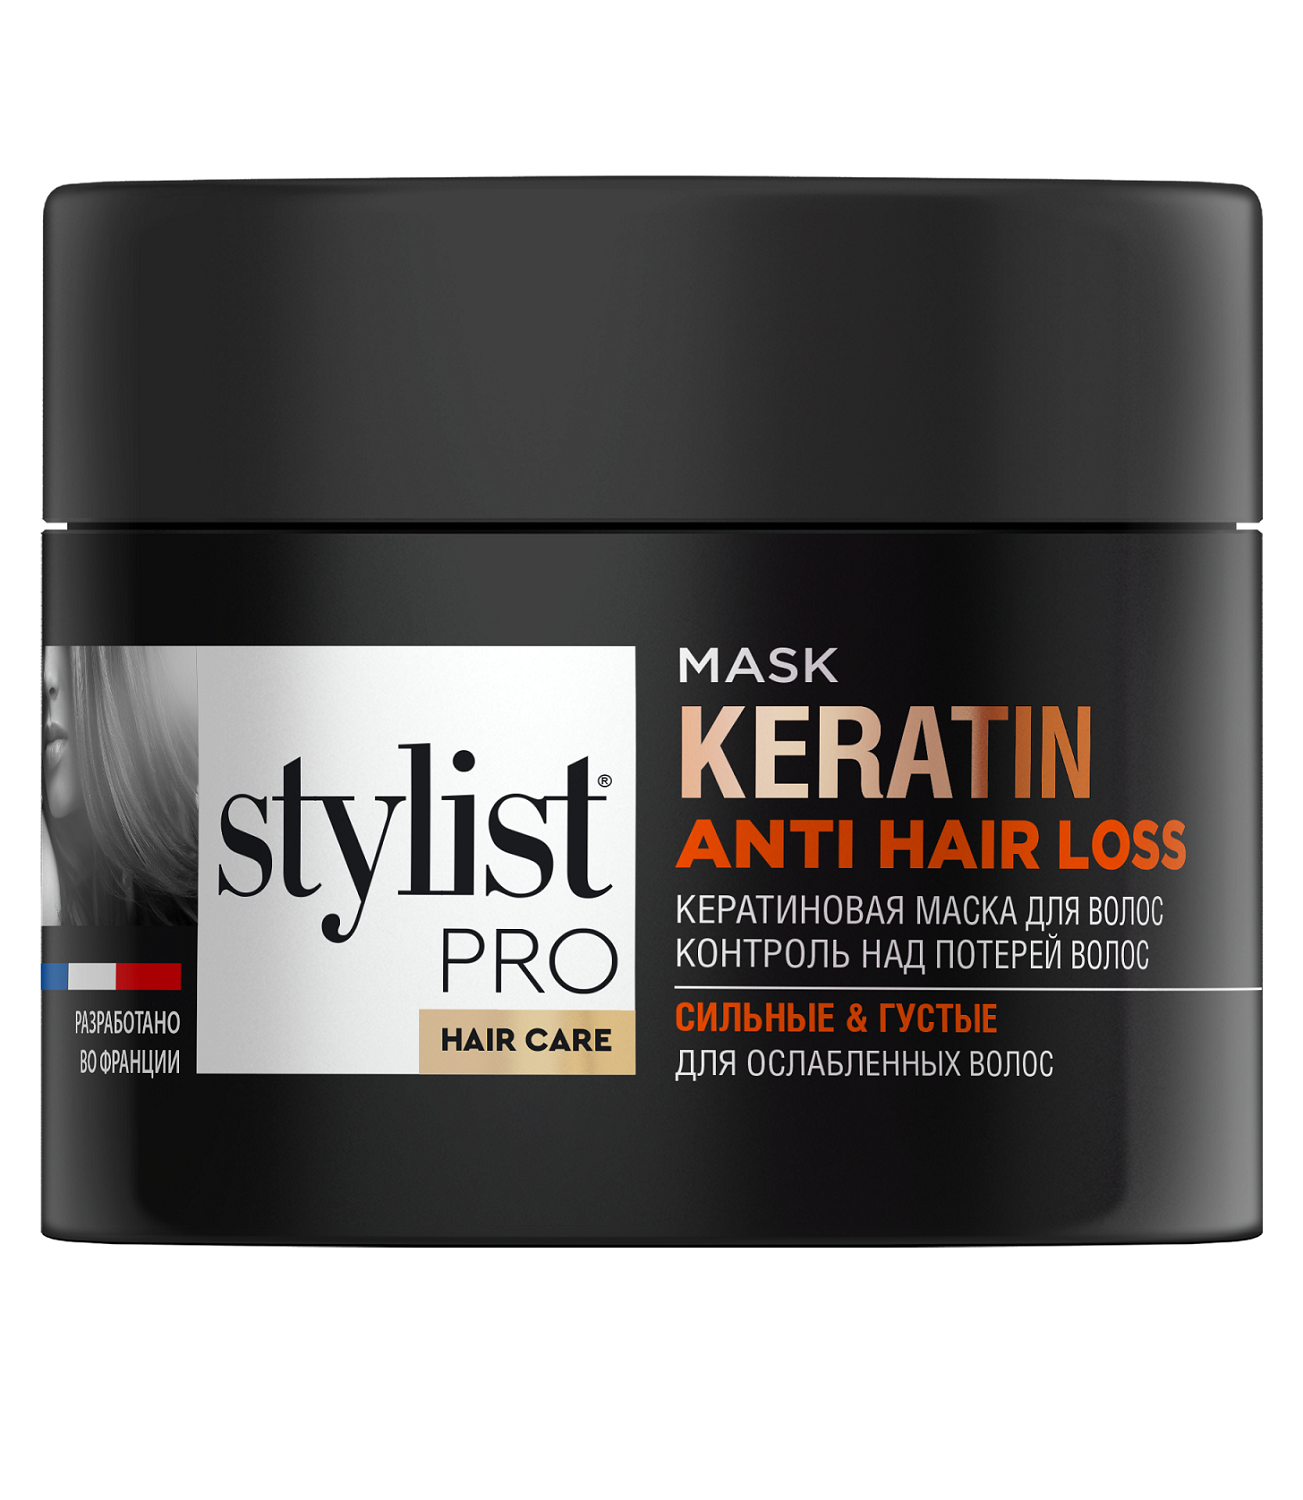 Маска для волос STYLIST PRO hair care Кератиновая контроль над потерей волос 220мл р - в интернет-магазине tut-beauty.by